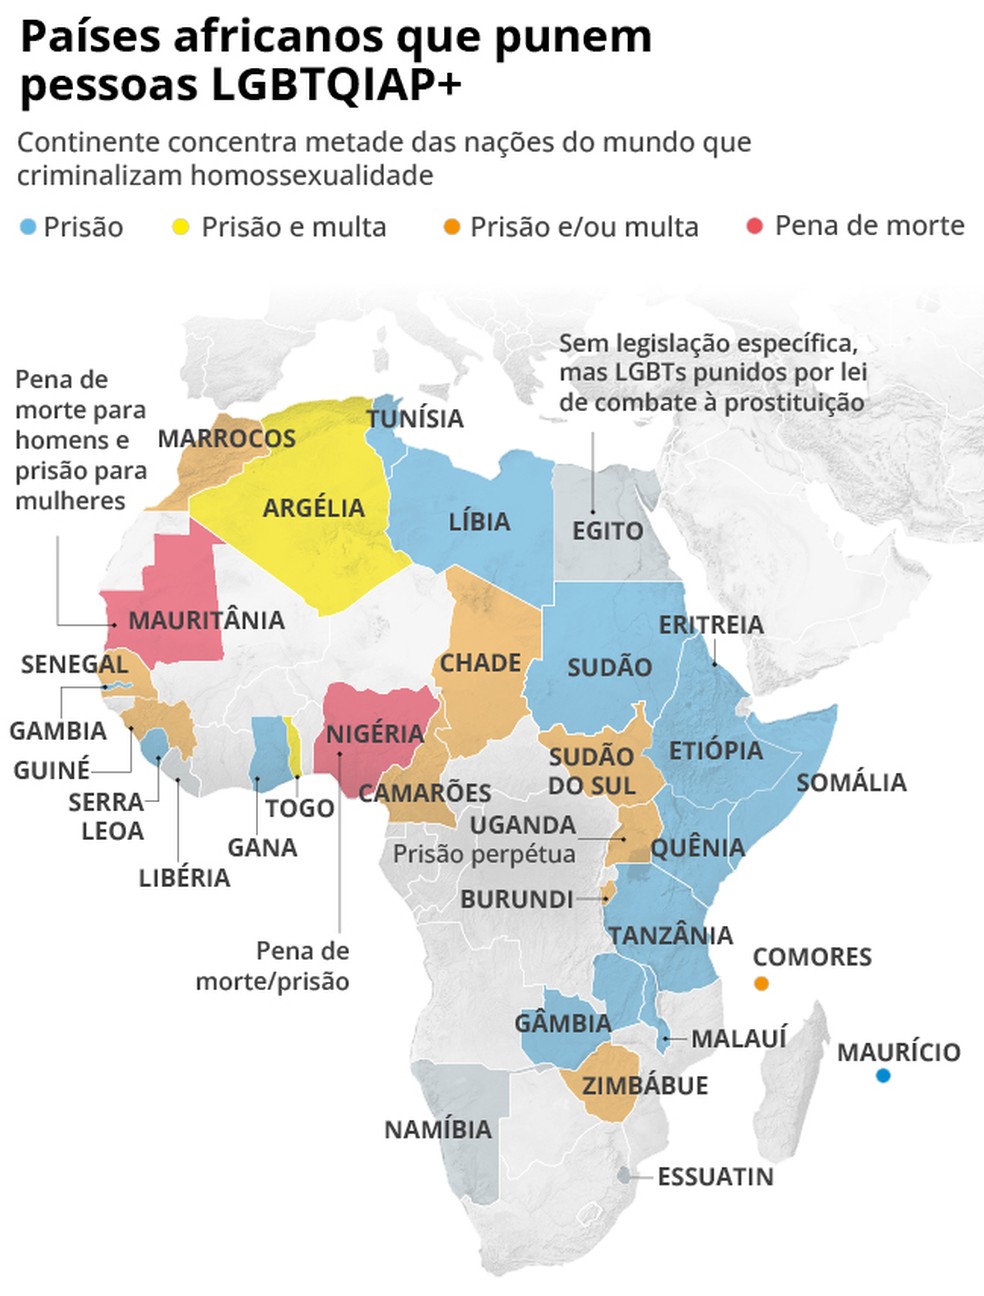 Trinta e dois países africanos punem pessoas LGBTQIAP+ — Foto: Arte O Globo